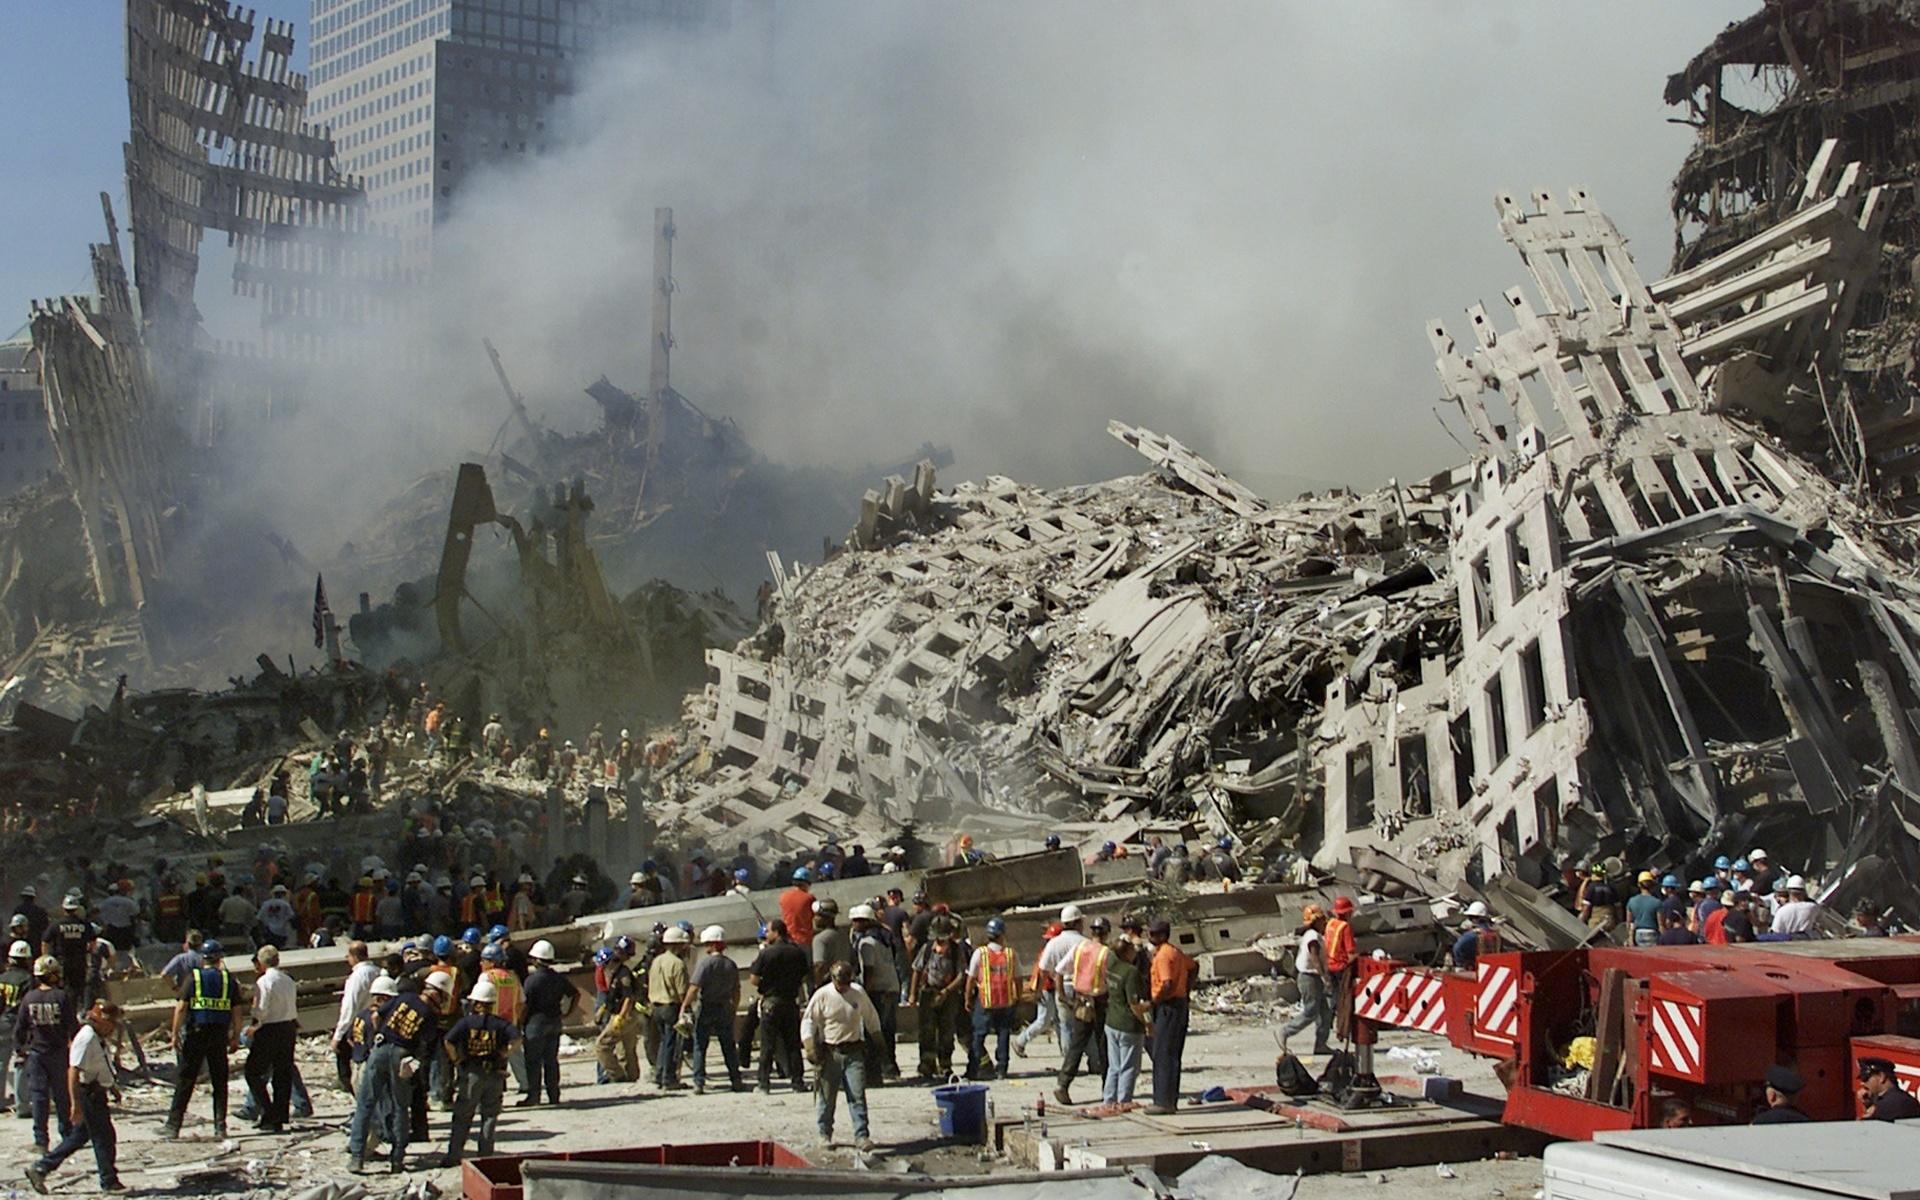 Uppröjningsarbetet kring Ground Zero, som området kom att kallas, fortgick under lång tid. Här en bild från 13 september 2001. 